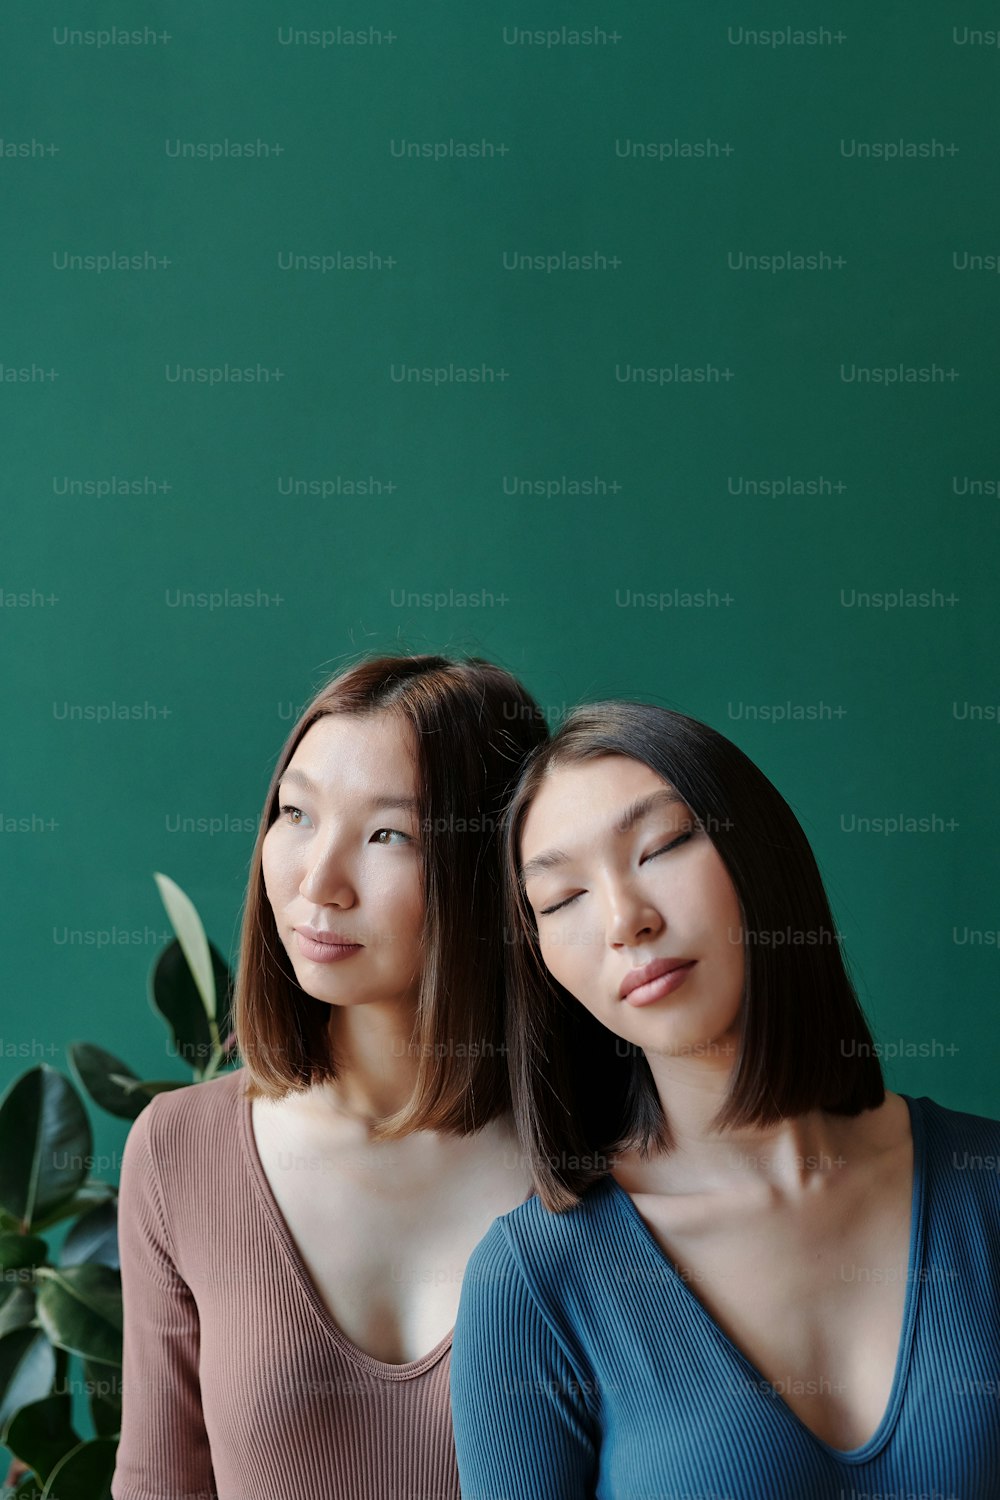 Junge wunderschöne Zwillingsschwestern asiatischer Abstammung mit dunklen, glatten Haaren, die sich vor der Kamera vor der heimischen Pflanze und der jadegrünen Wand entspannen